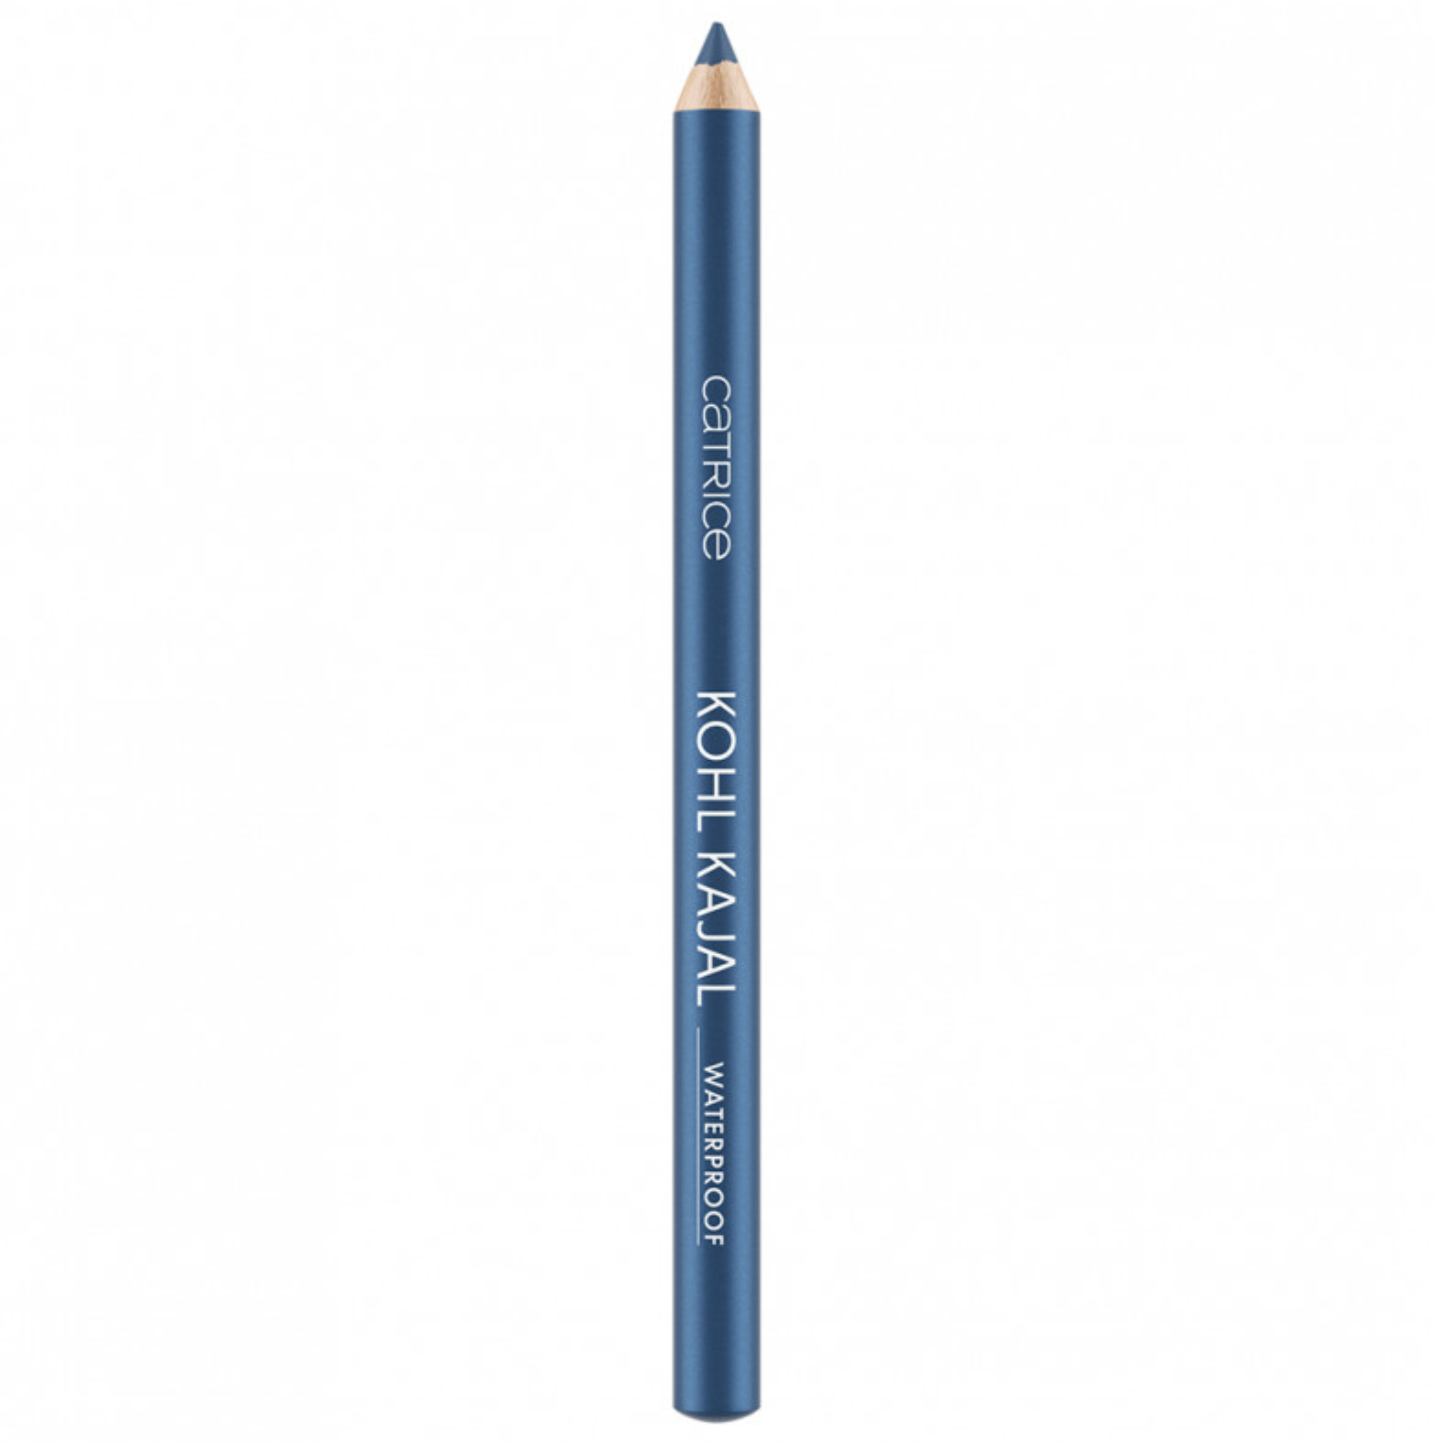 Карандаш каял. Essence карандаш для глаз / Kajal. Essence Kajal 26. Essence карандаш для глаз Kajal Pencil №08. Голубой карандаш для глаз.